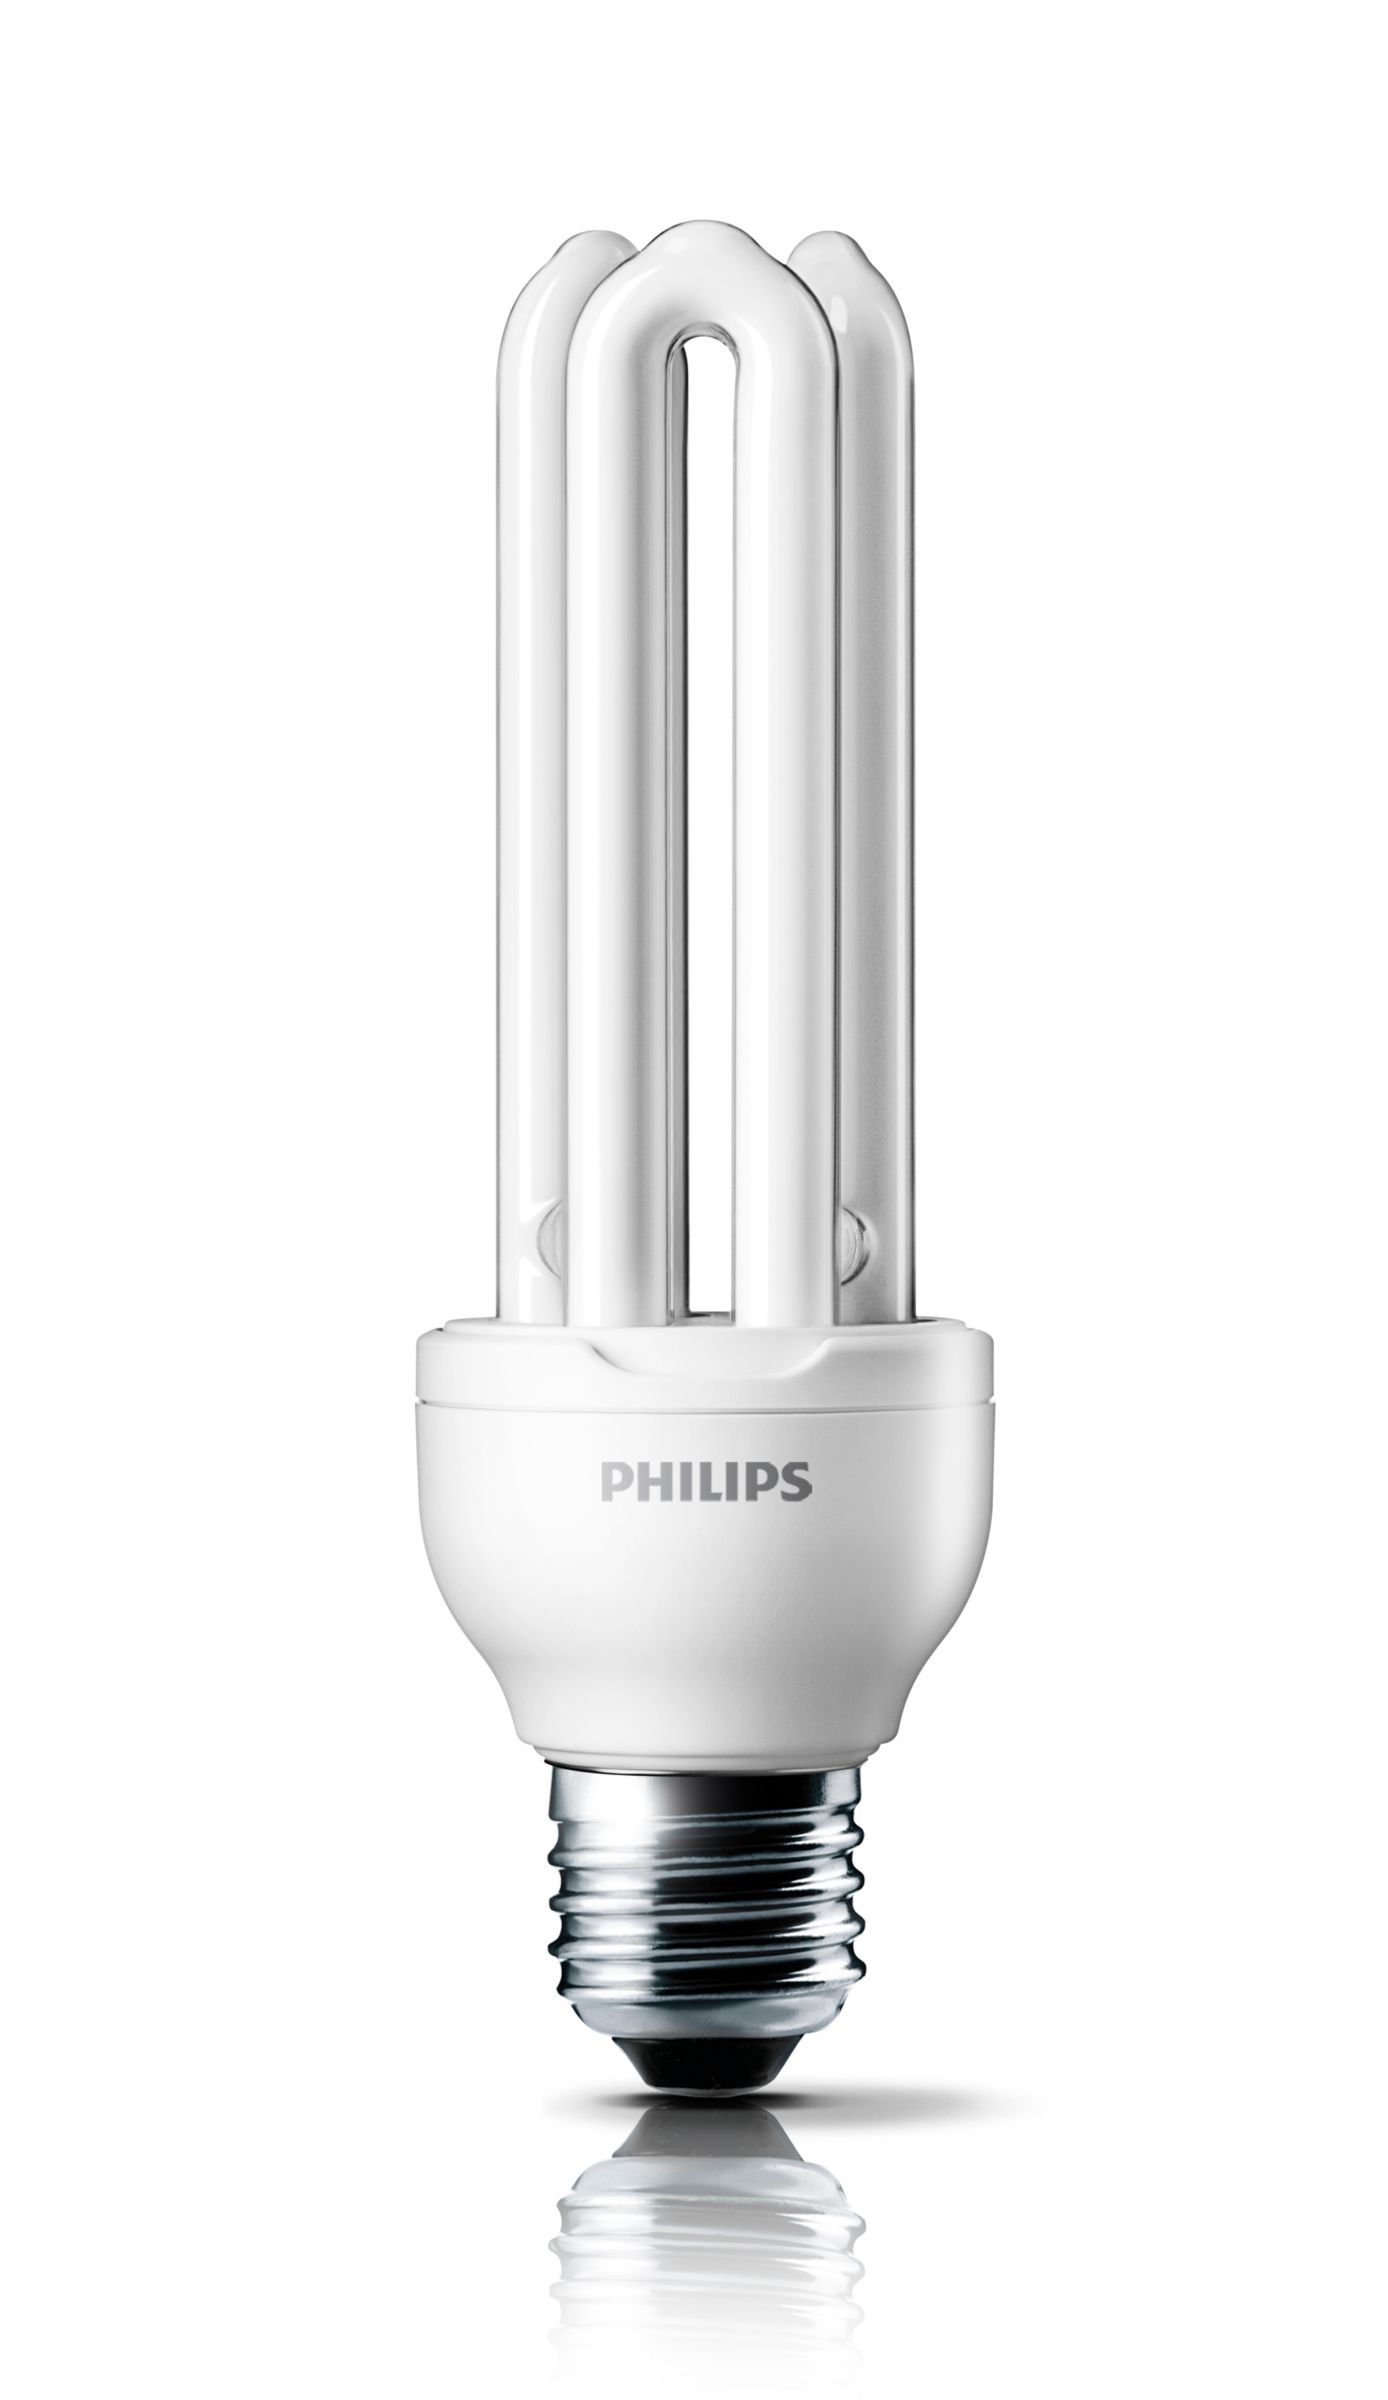 Philips 929689413558 Génie 11 W E27 WW 1BL ampoule à  Economie dénergie 230V 